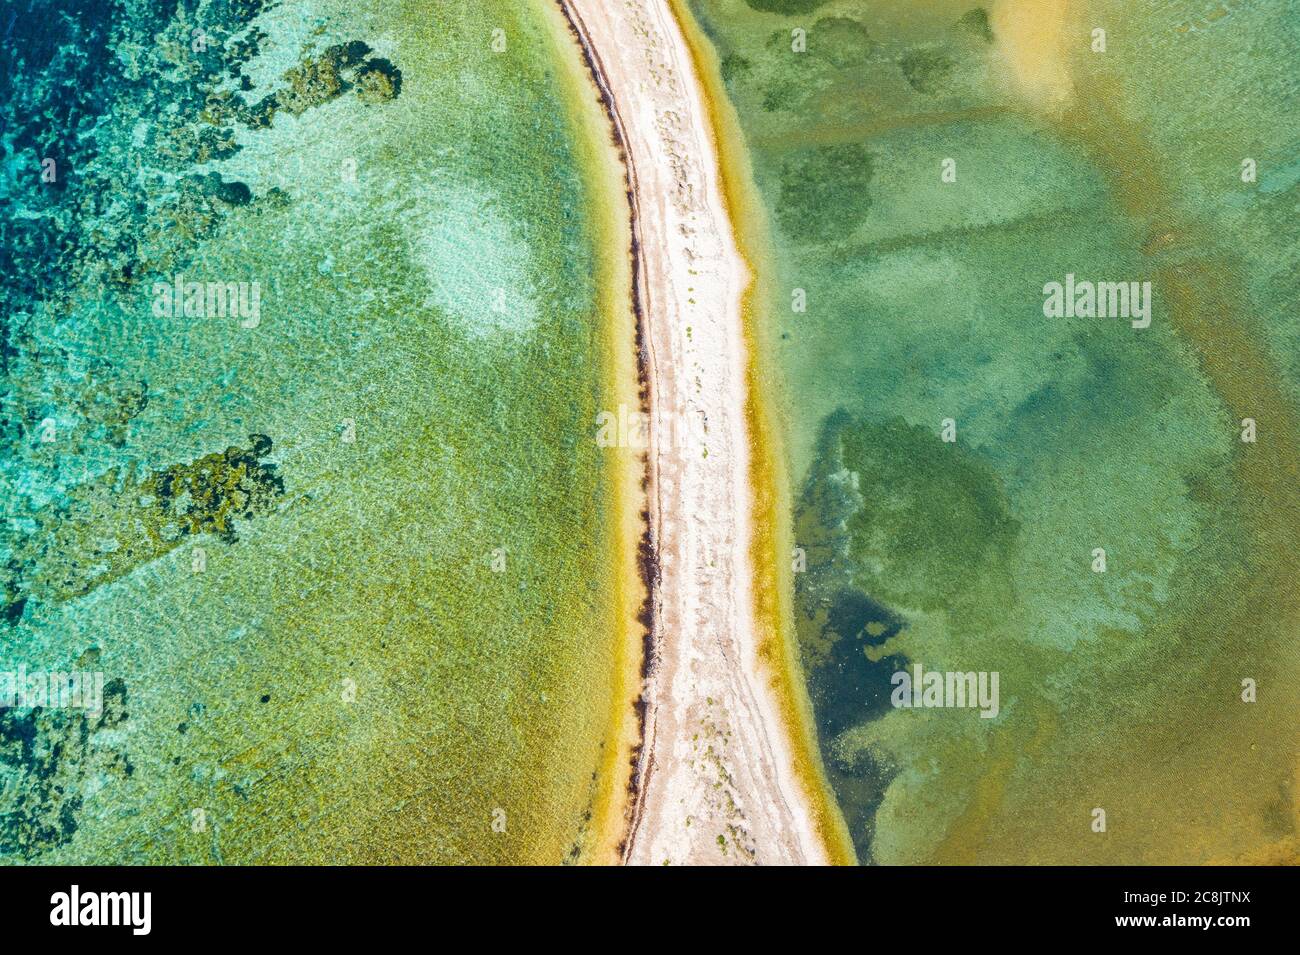 Vista aerea della splendida laguna sul mare Adriatico in Croazia, isola Dugi Otok. Pinete, lunghe spiagge nascoste e superficie di mare smeraldo Foto Stock